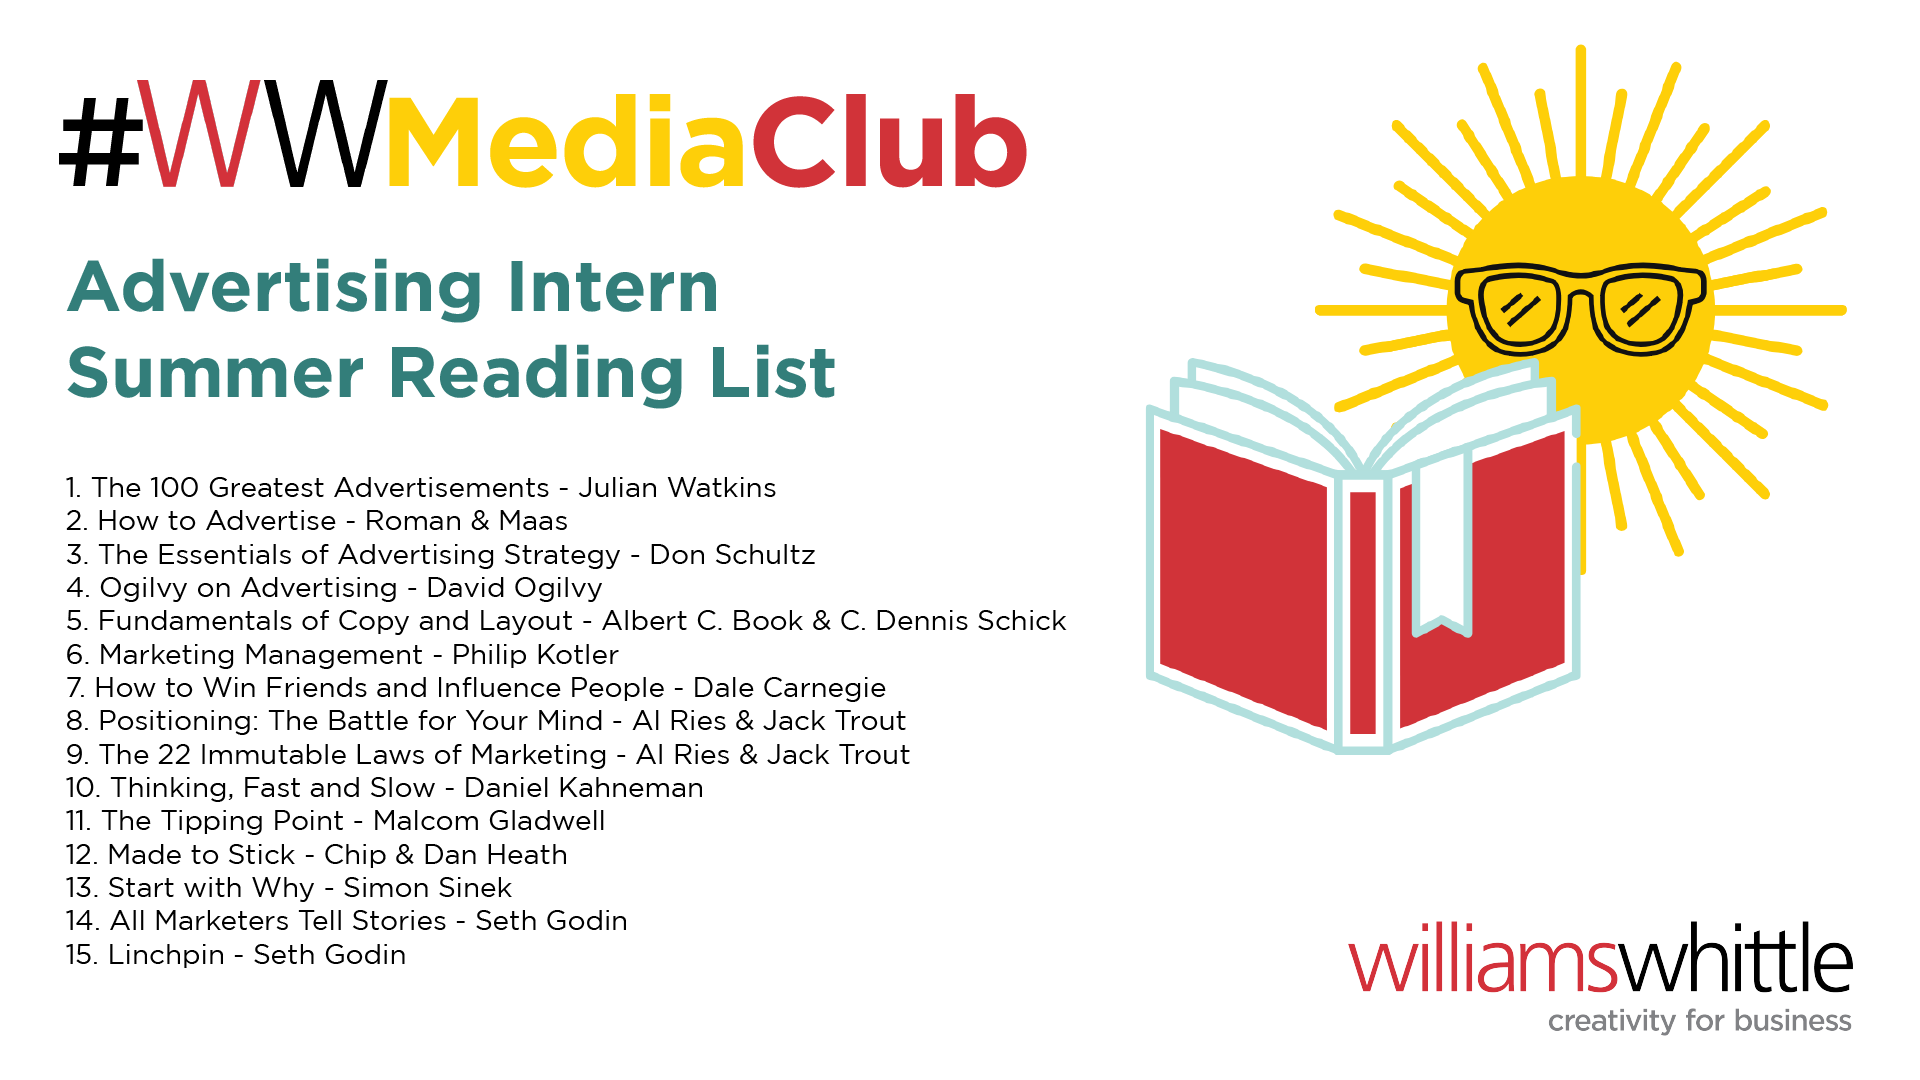 Advertising Intern Summer Reading List